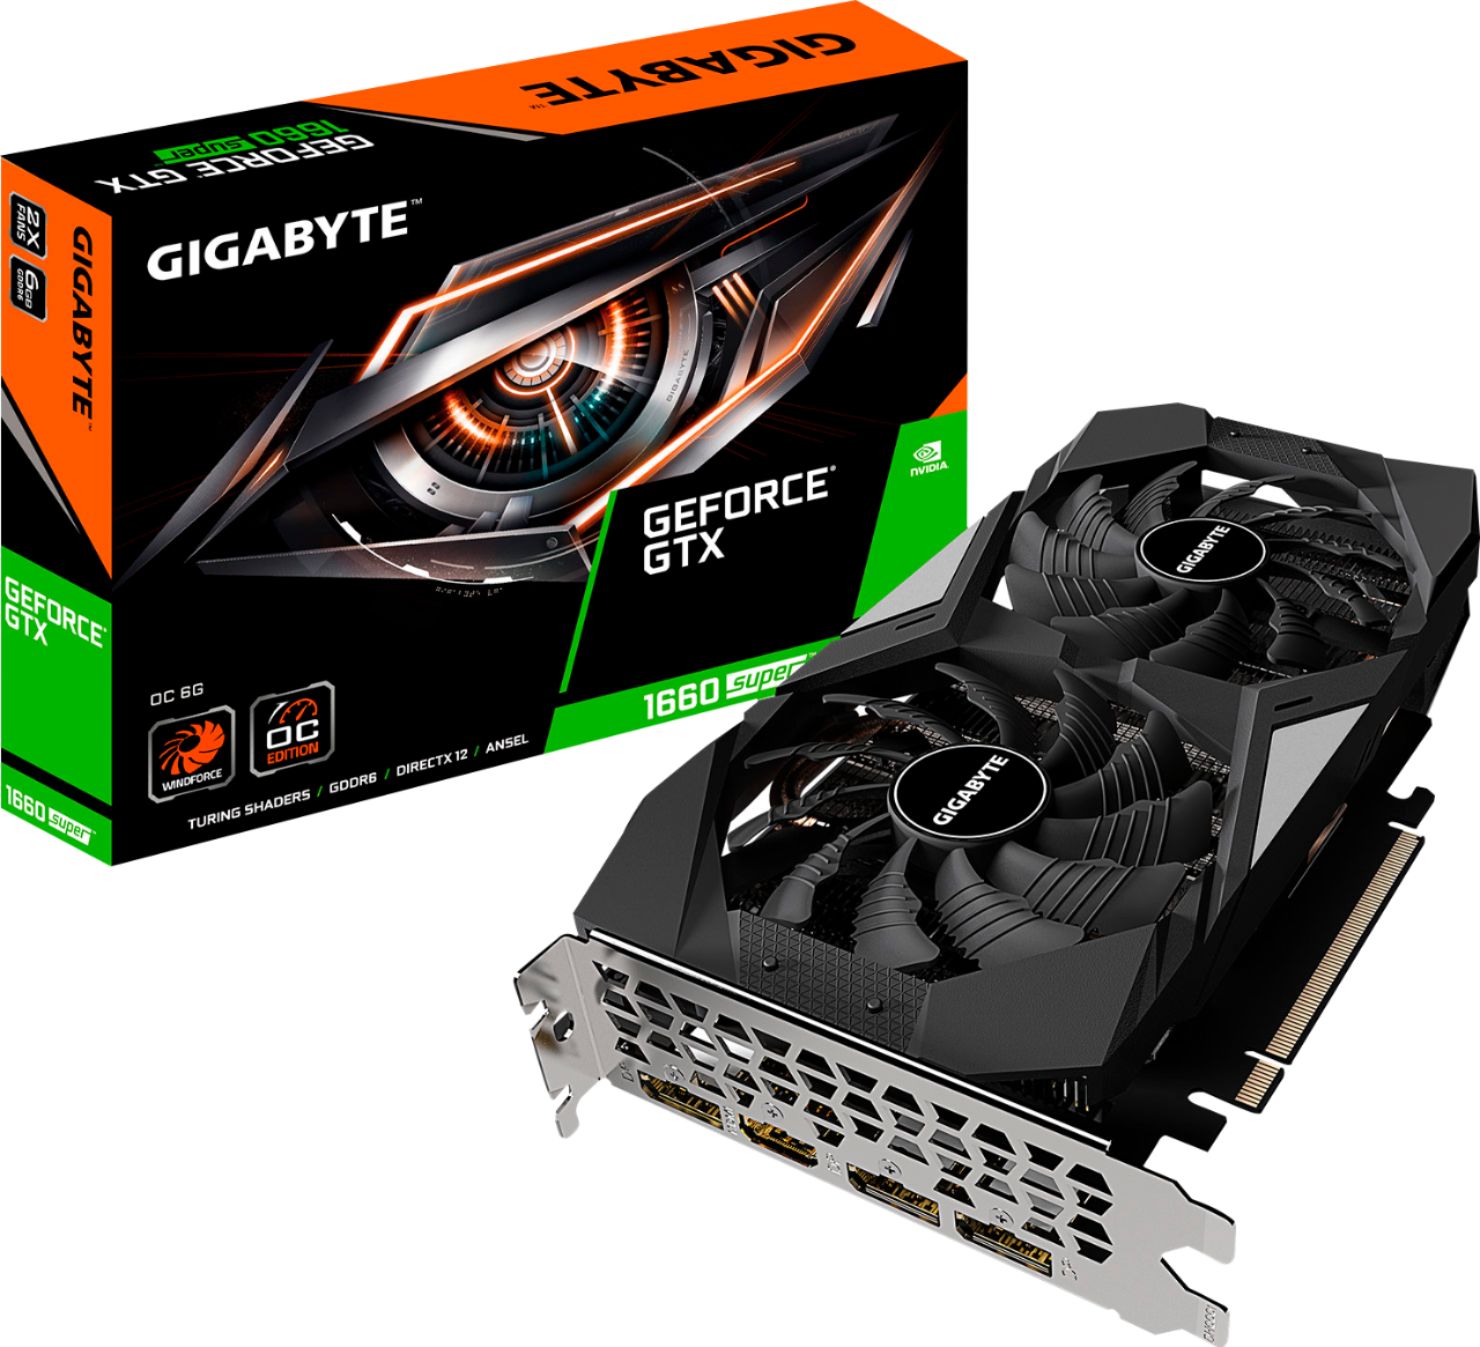 GIGABYTE NVIDIA GeForce GTX 1660 SUPER OC  - Best Buy